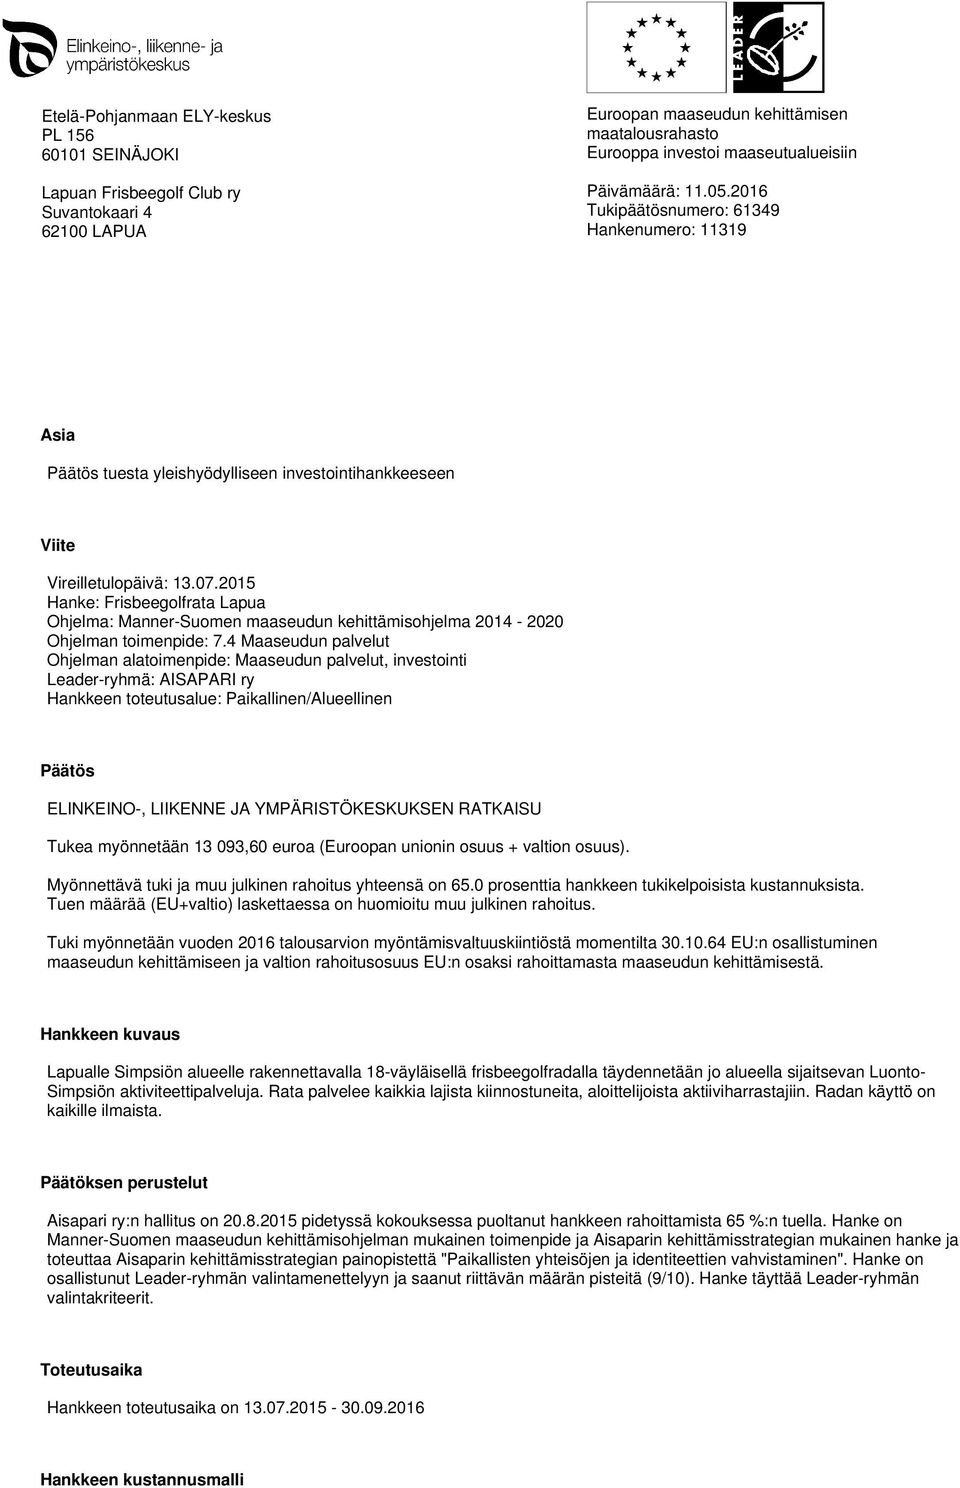 2015 Hanke: Frisbeegolfrata Lapua Ohjelma: Manner-Suomen maaseudun kehittämisohjelma 2014-2020 Ohjelman toimenpide: 7.